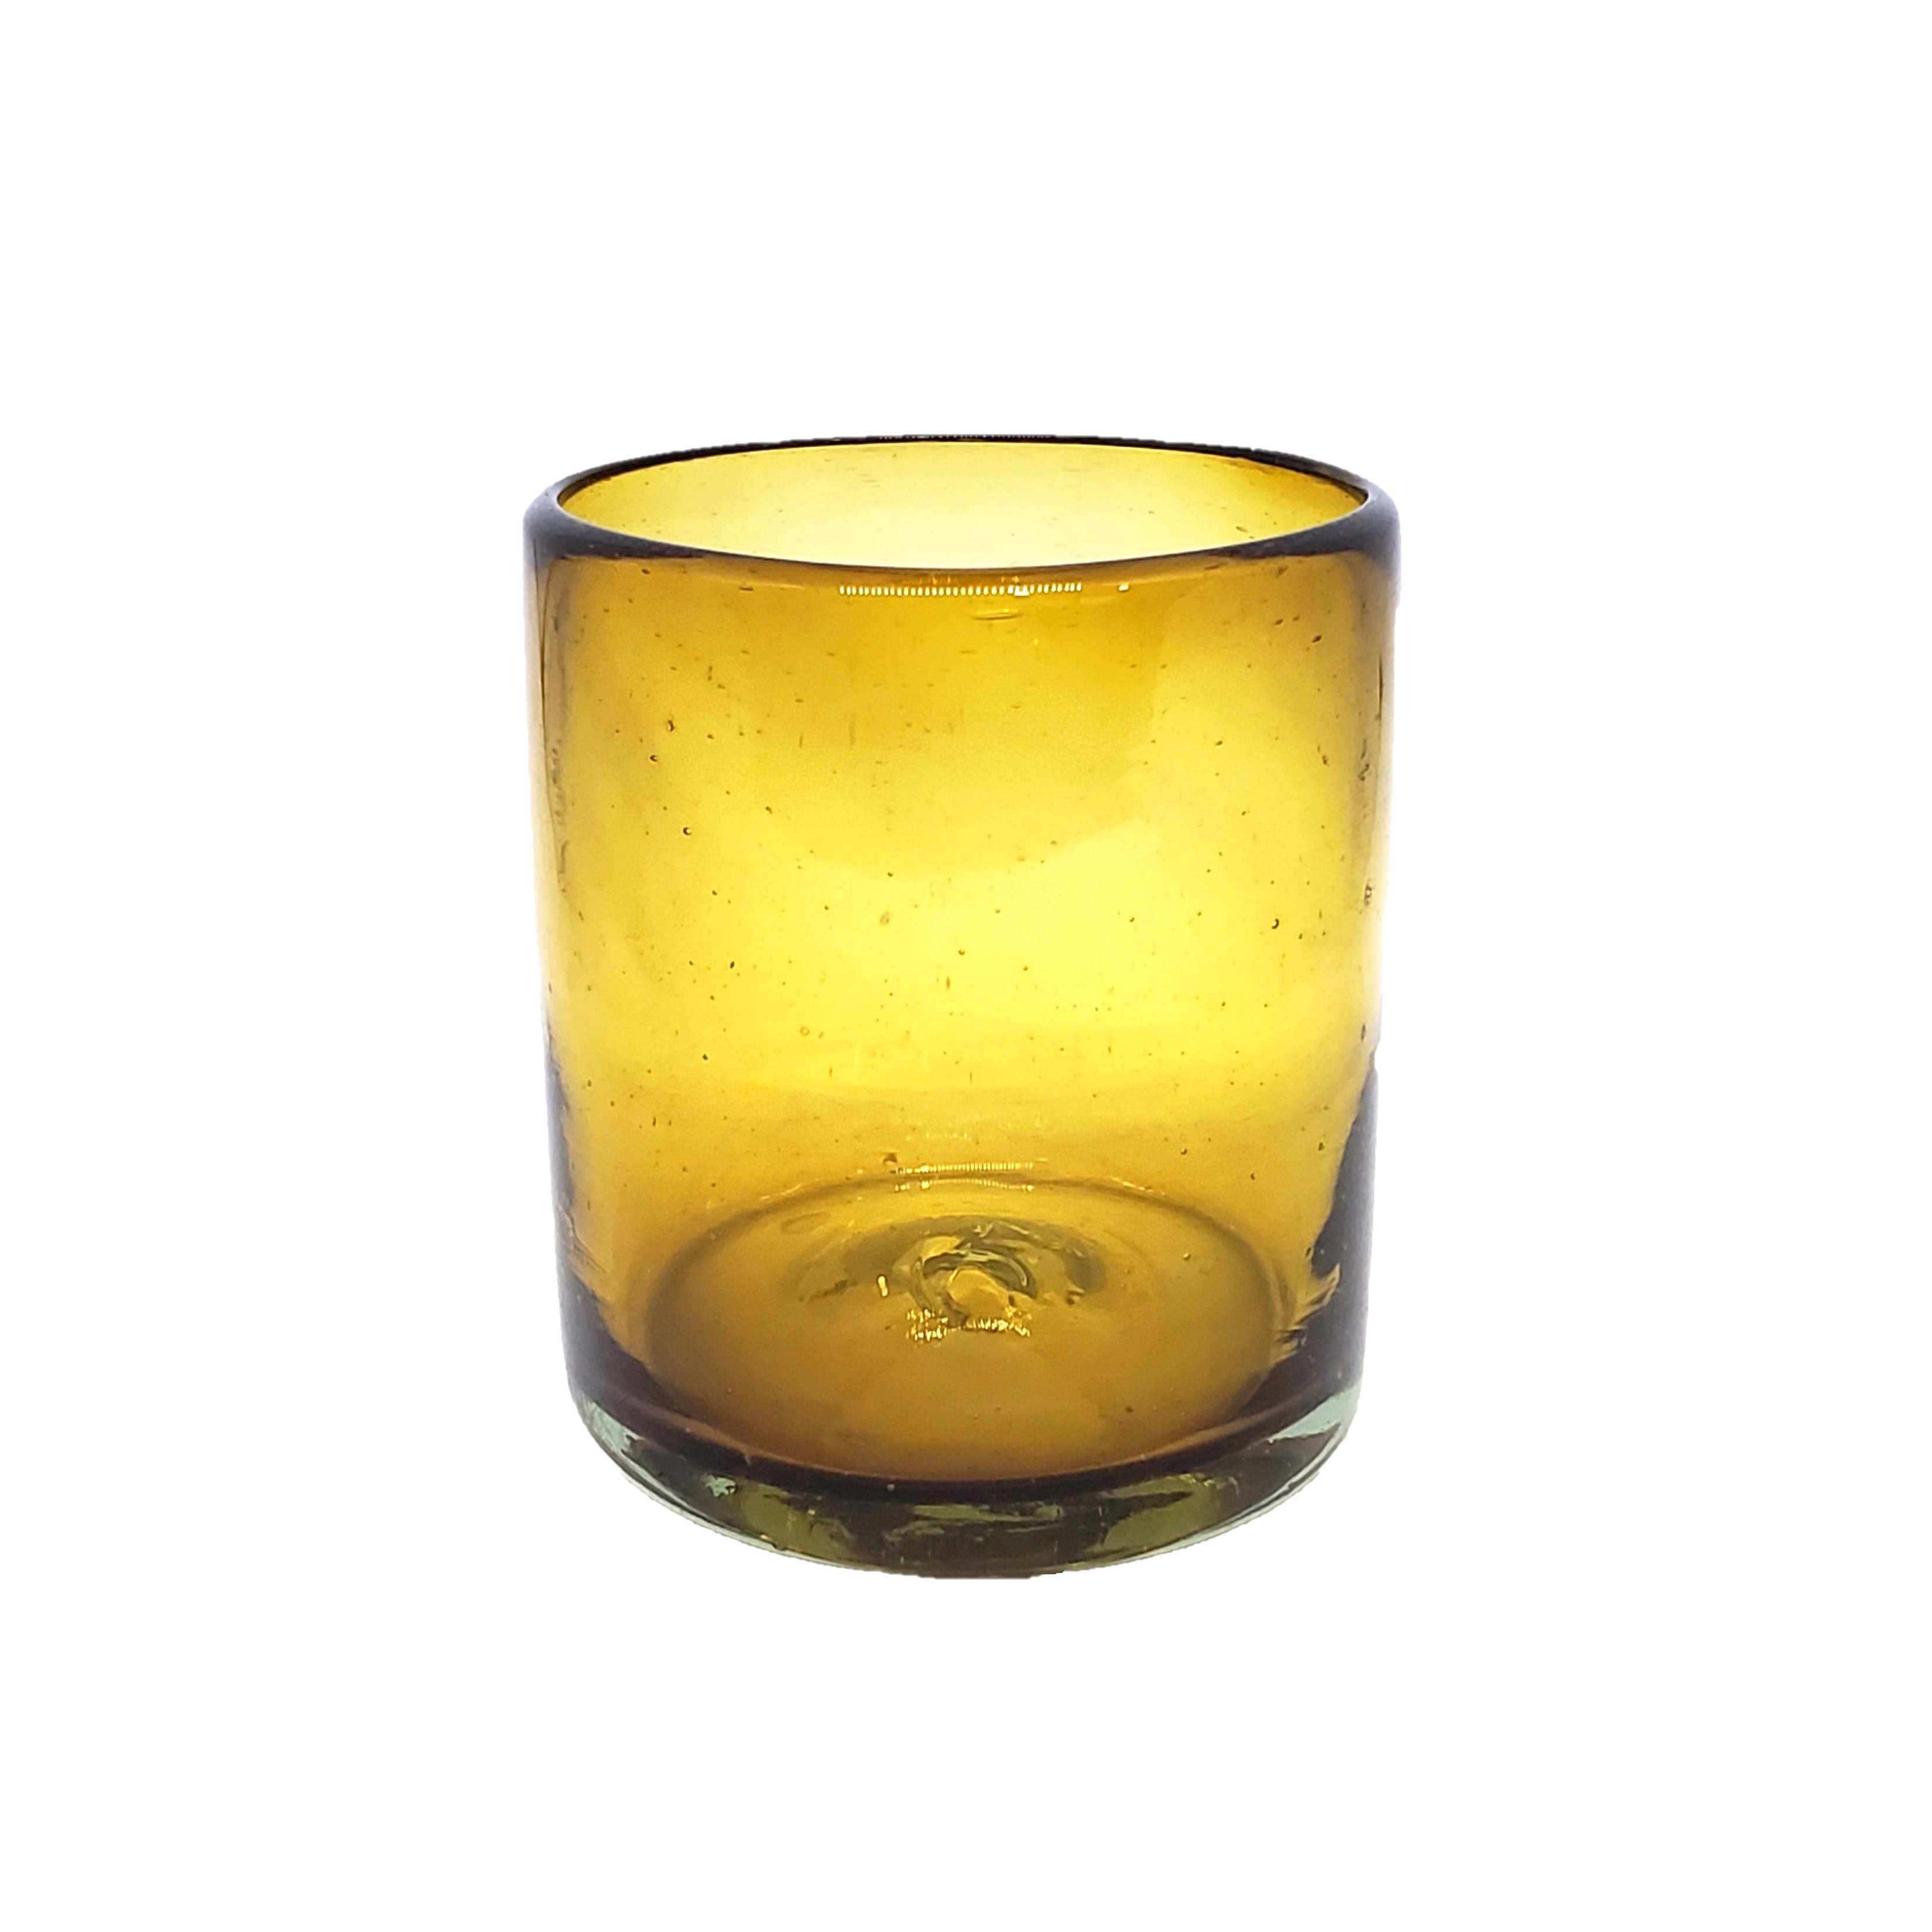 Novedades / s 9 oz color Ambar Sólido (set de 6) / Éstos artesanales vasos le darán un toque colorido a su bebida favorita.